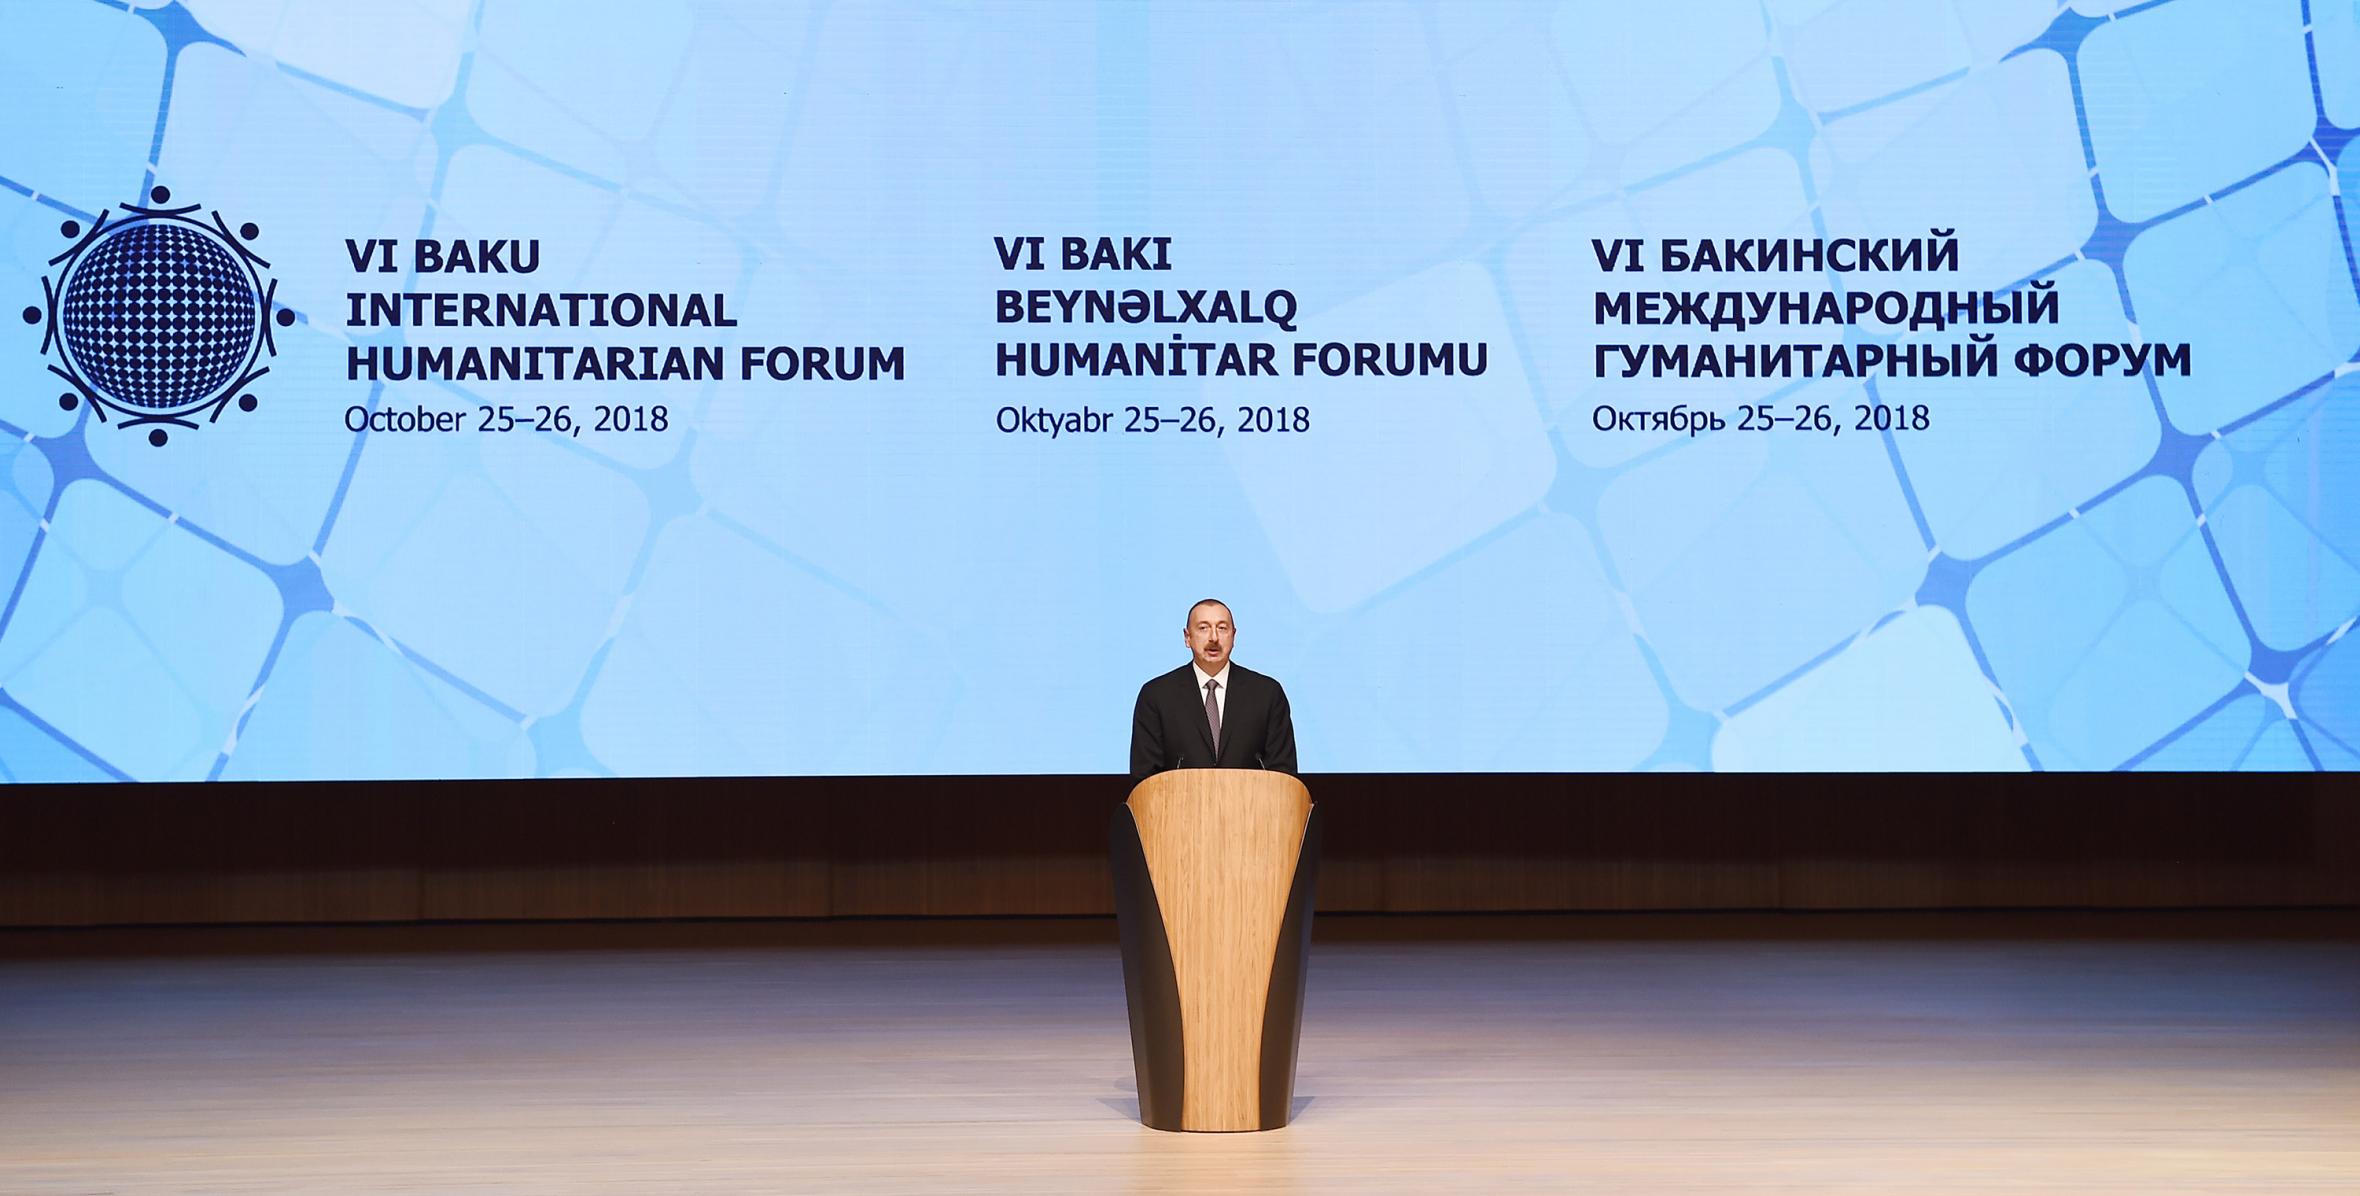 İlham Əliyev Bakıda VI Beynəlxalq Humanitar Forumun rəsmi açılış mərasimində iştirak edib